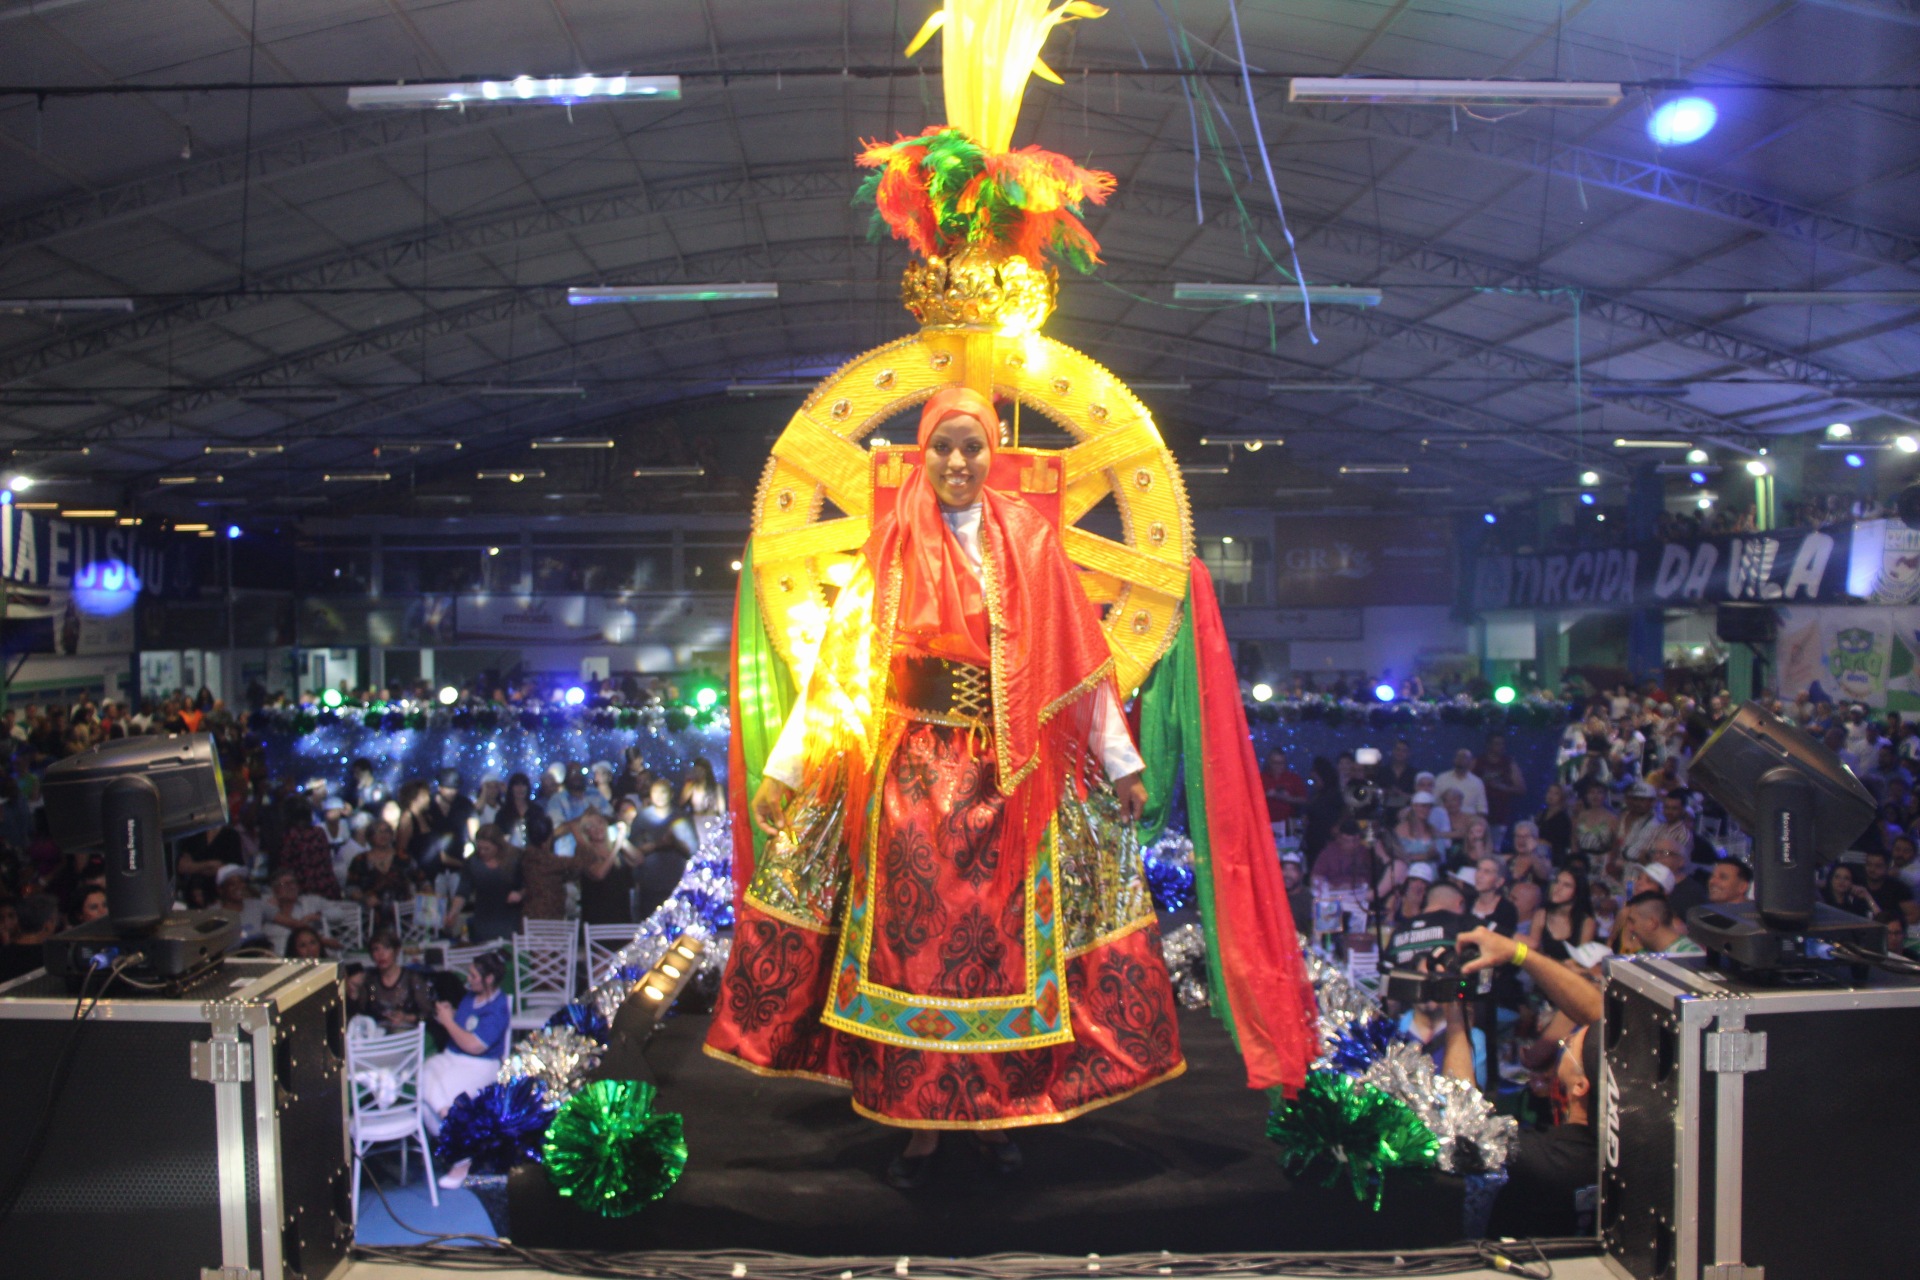 Fantasia da Vila Maria para o Carnaval 2023. Foto: Paulo Sadao e Ladislau/Facebook